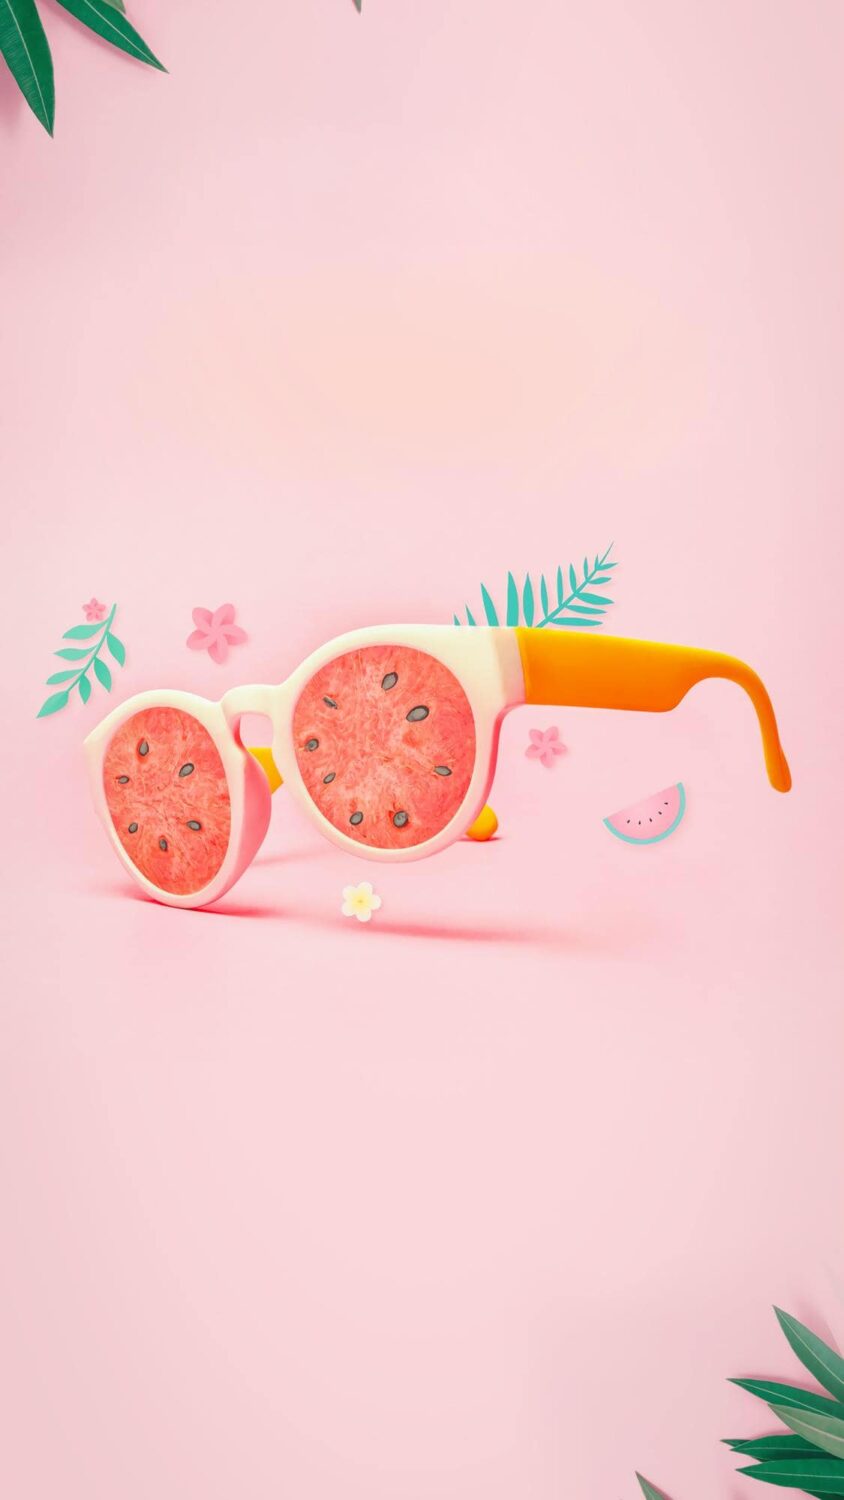 Watermelon sunglasses